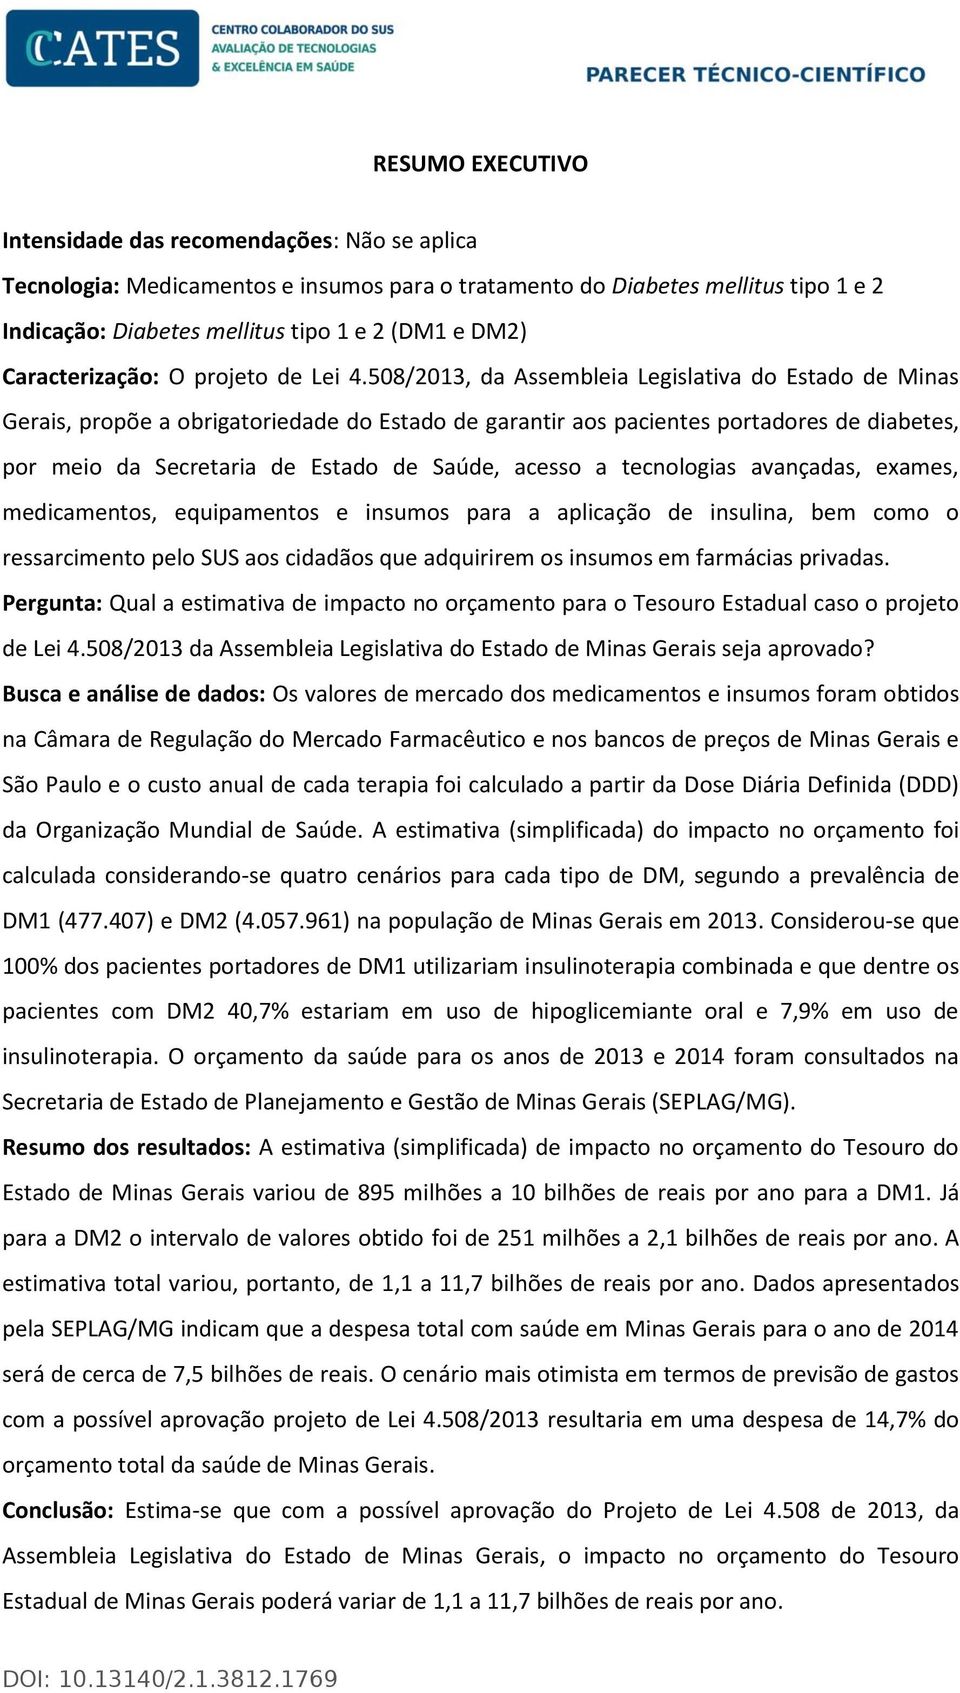 508/2013, da Assembleia Legislativa do Estado de Minas Gerais, propõe a obrigatoriedade do Estado de garantir aos pacientes portadores de diabetes, por meio da Secretaria de Estado de Saúde, acesso a